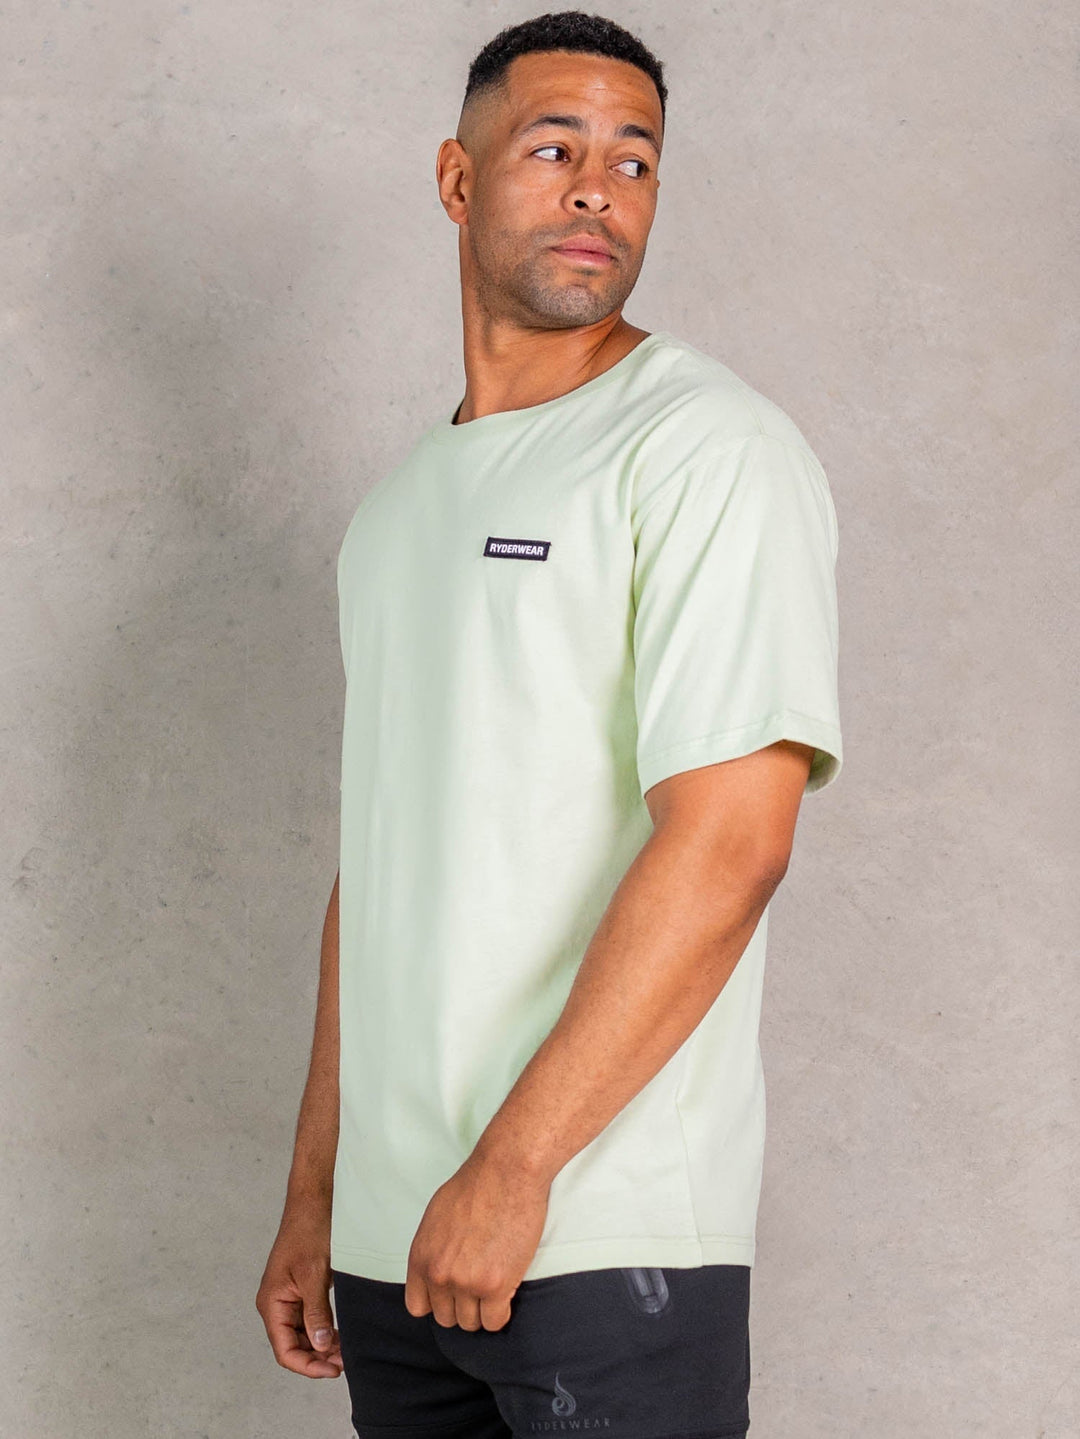 NRG Oversized T-Shirt - Matcha Clothing Ryderwear 